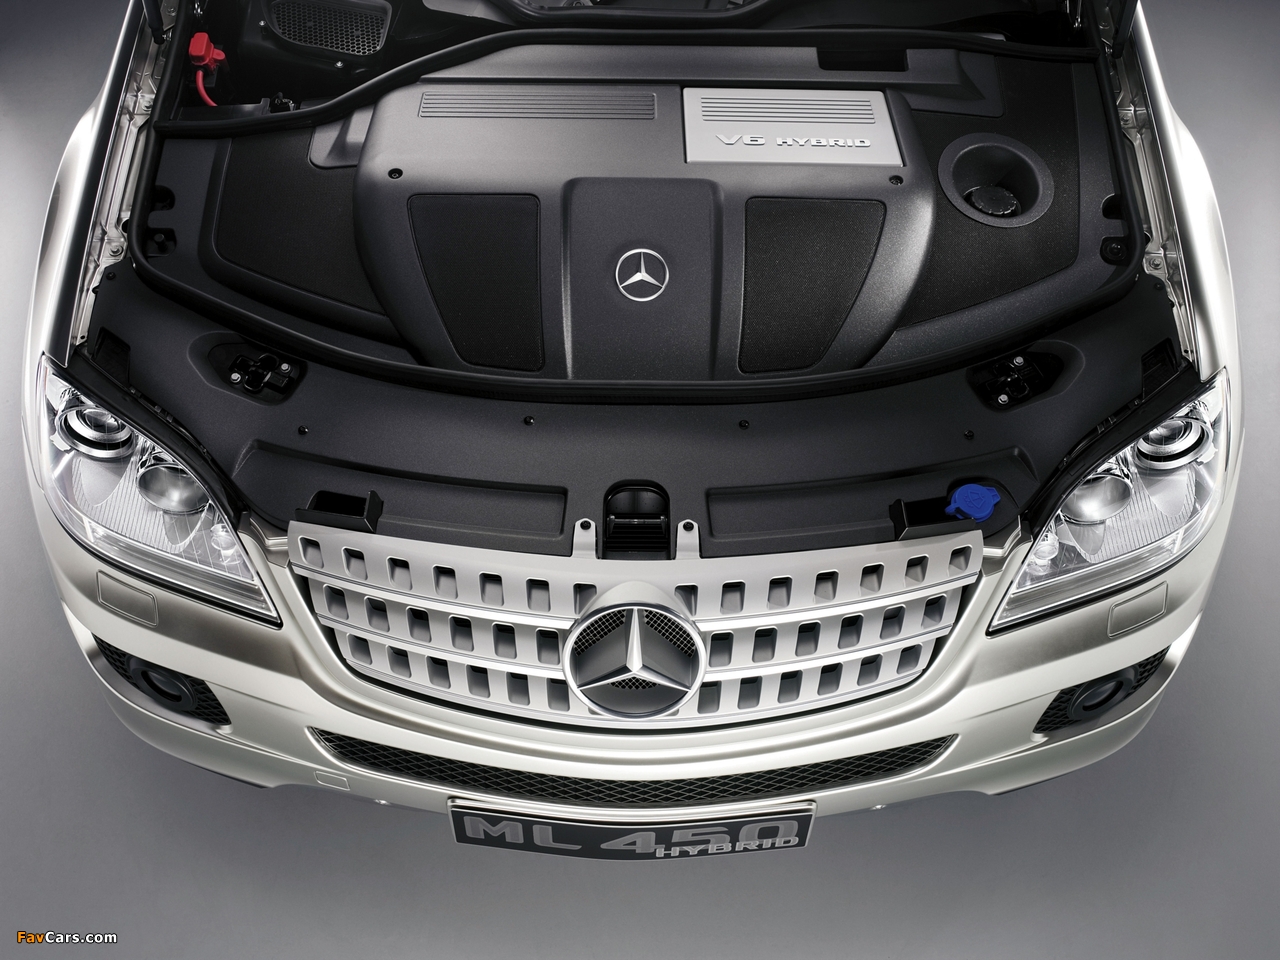 Mercedes-Benz ML 450 Hybrid Concept (W164) 2007 photos (1280 x 960)